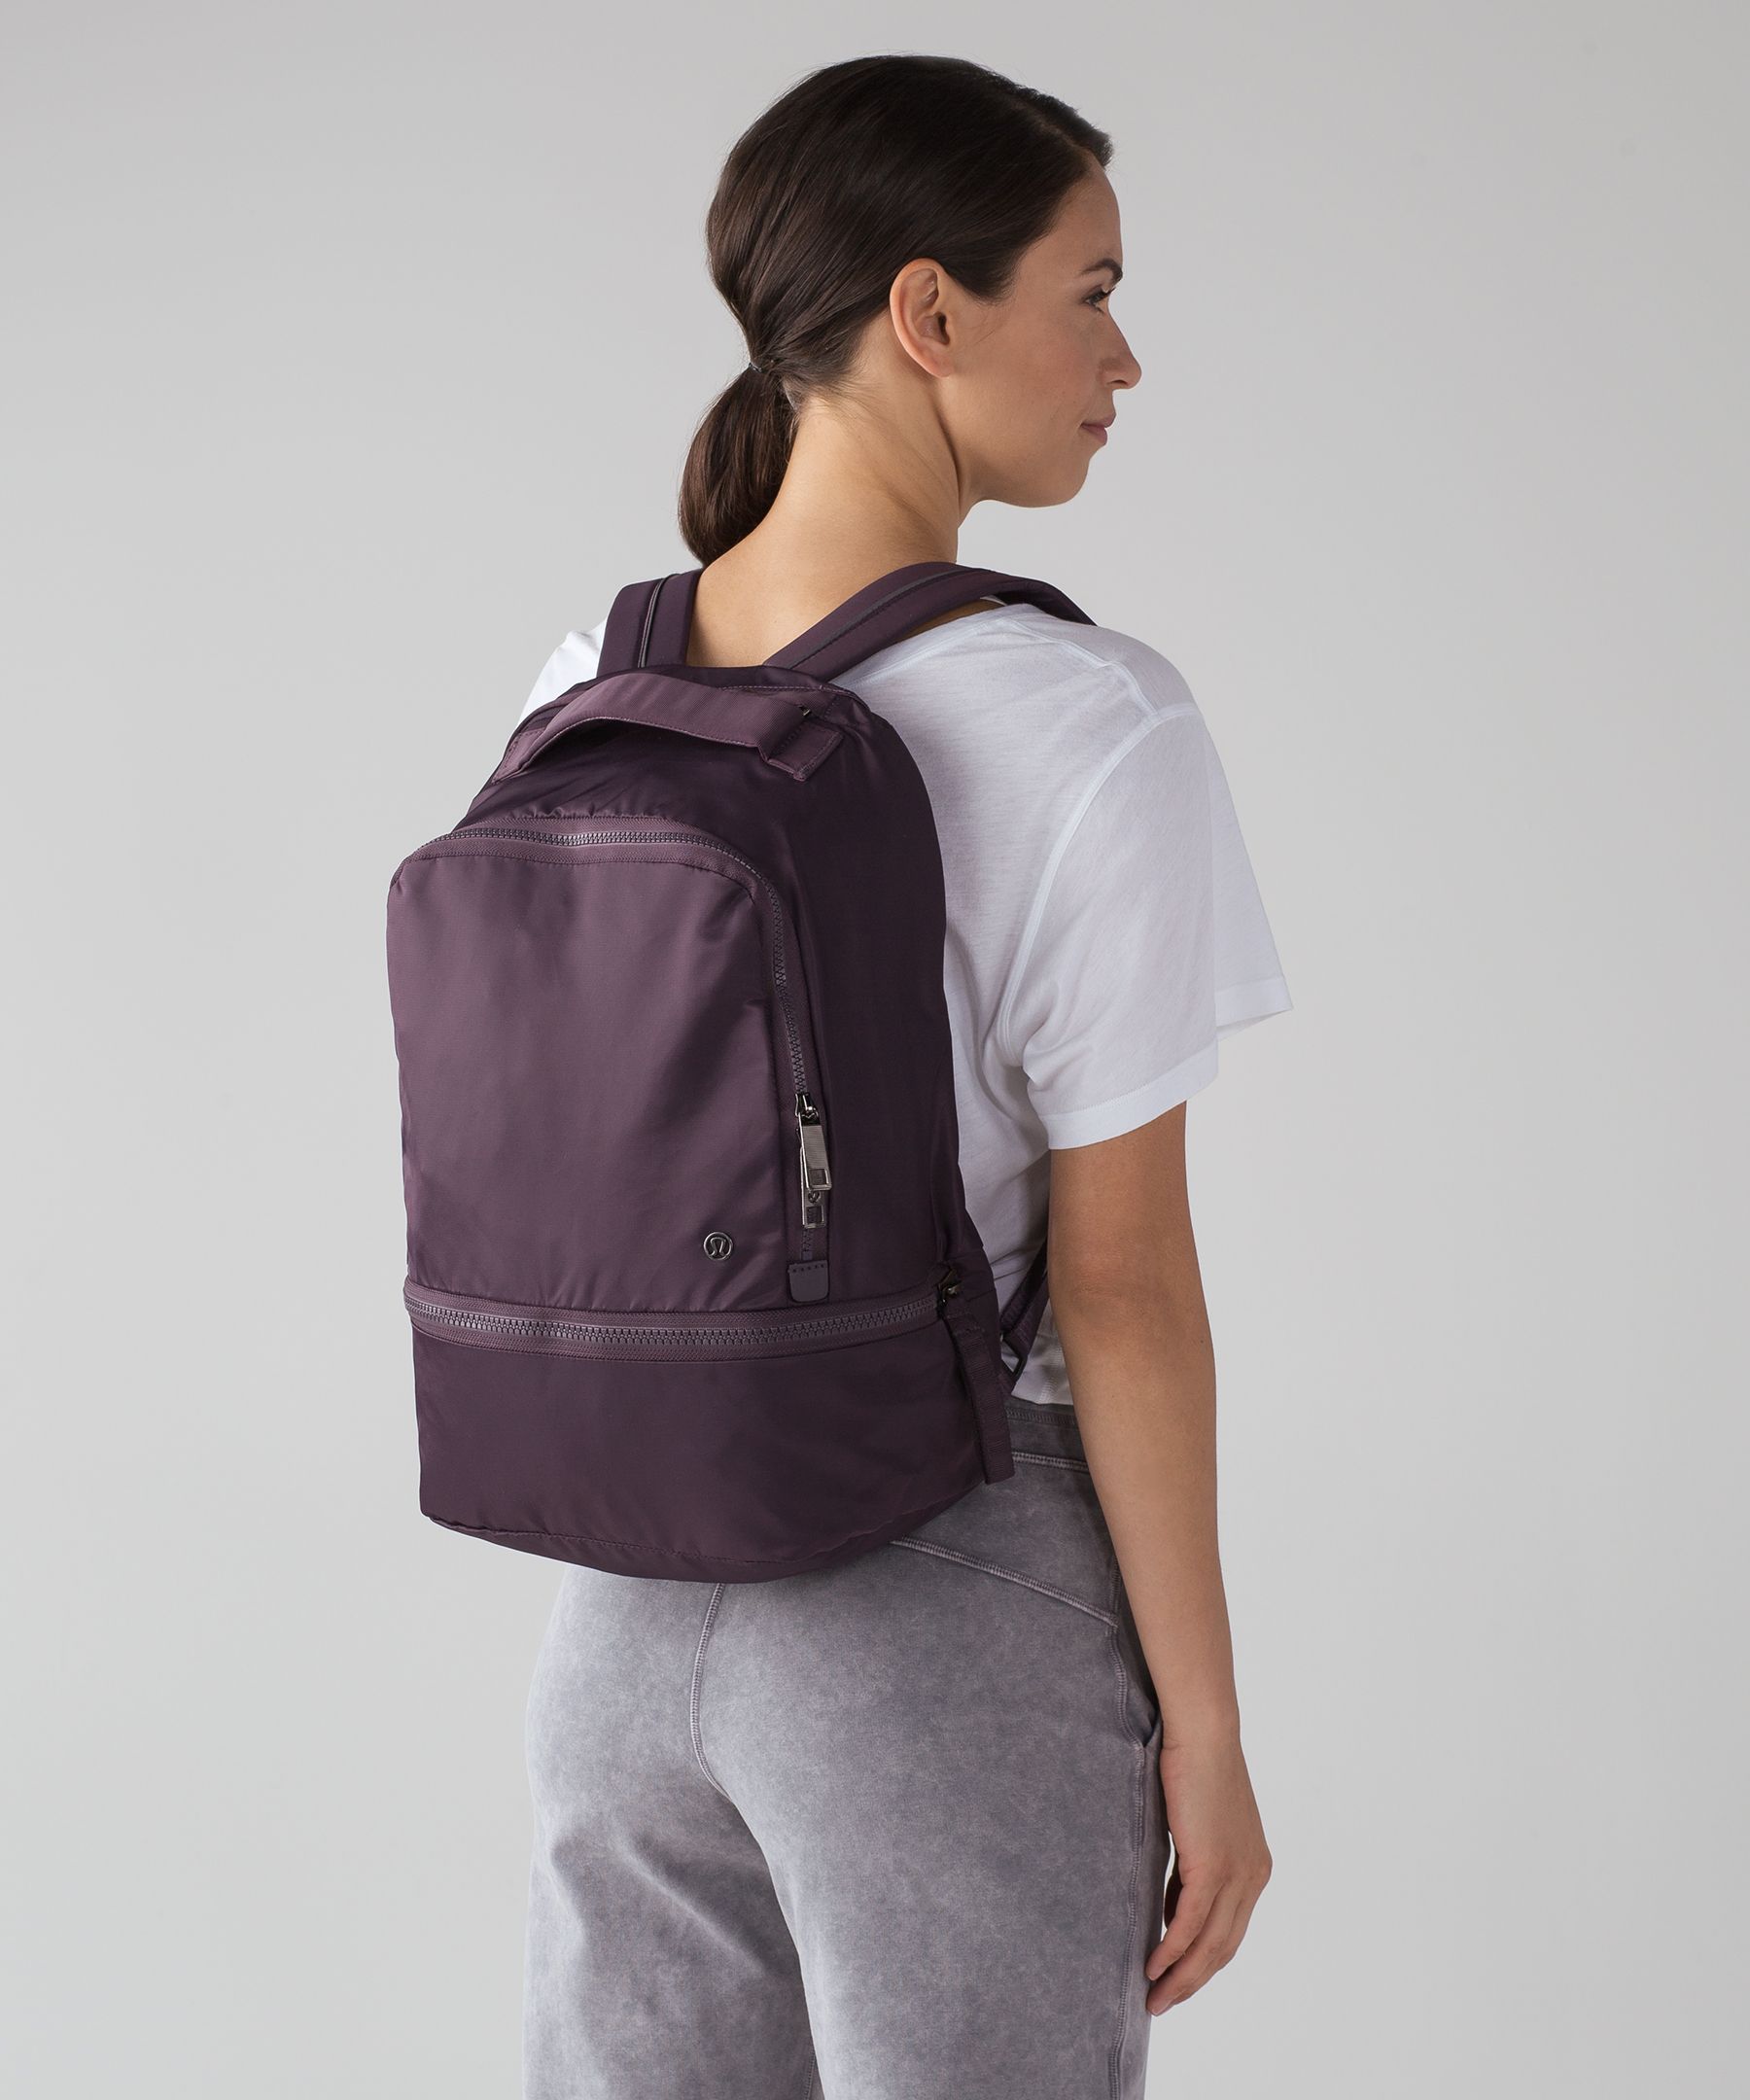 lululemon city adventurer backpack dupe